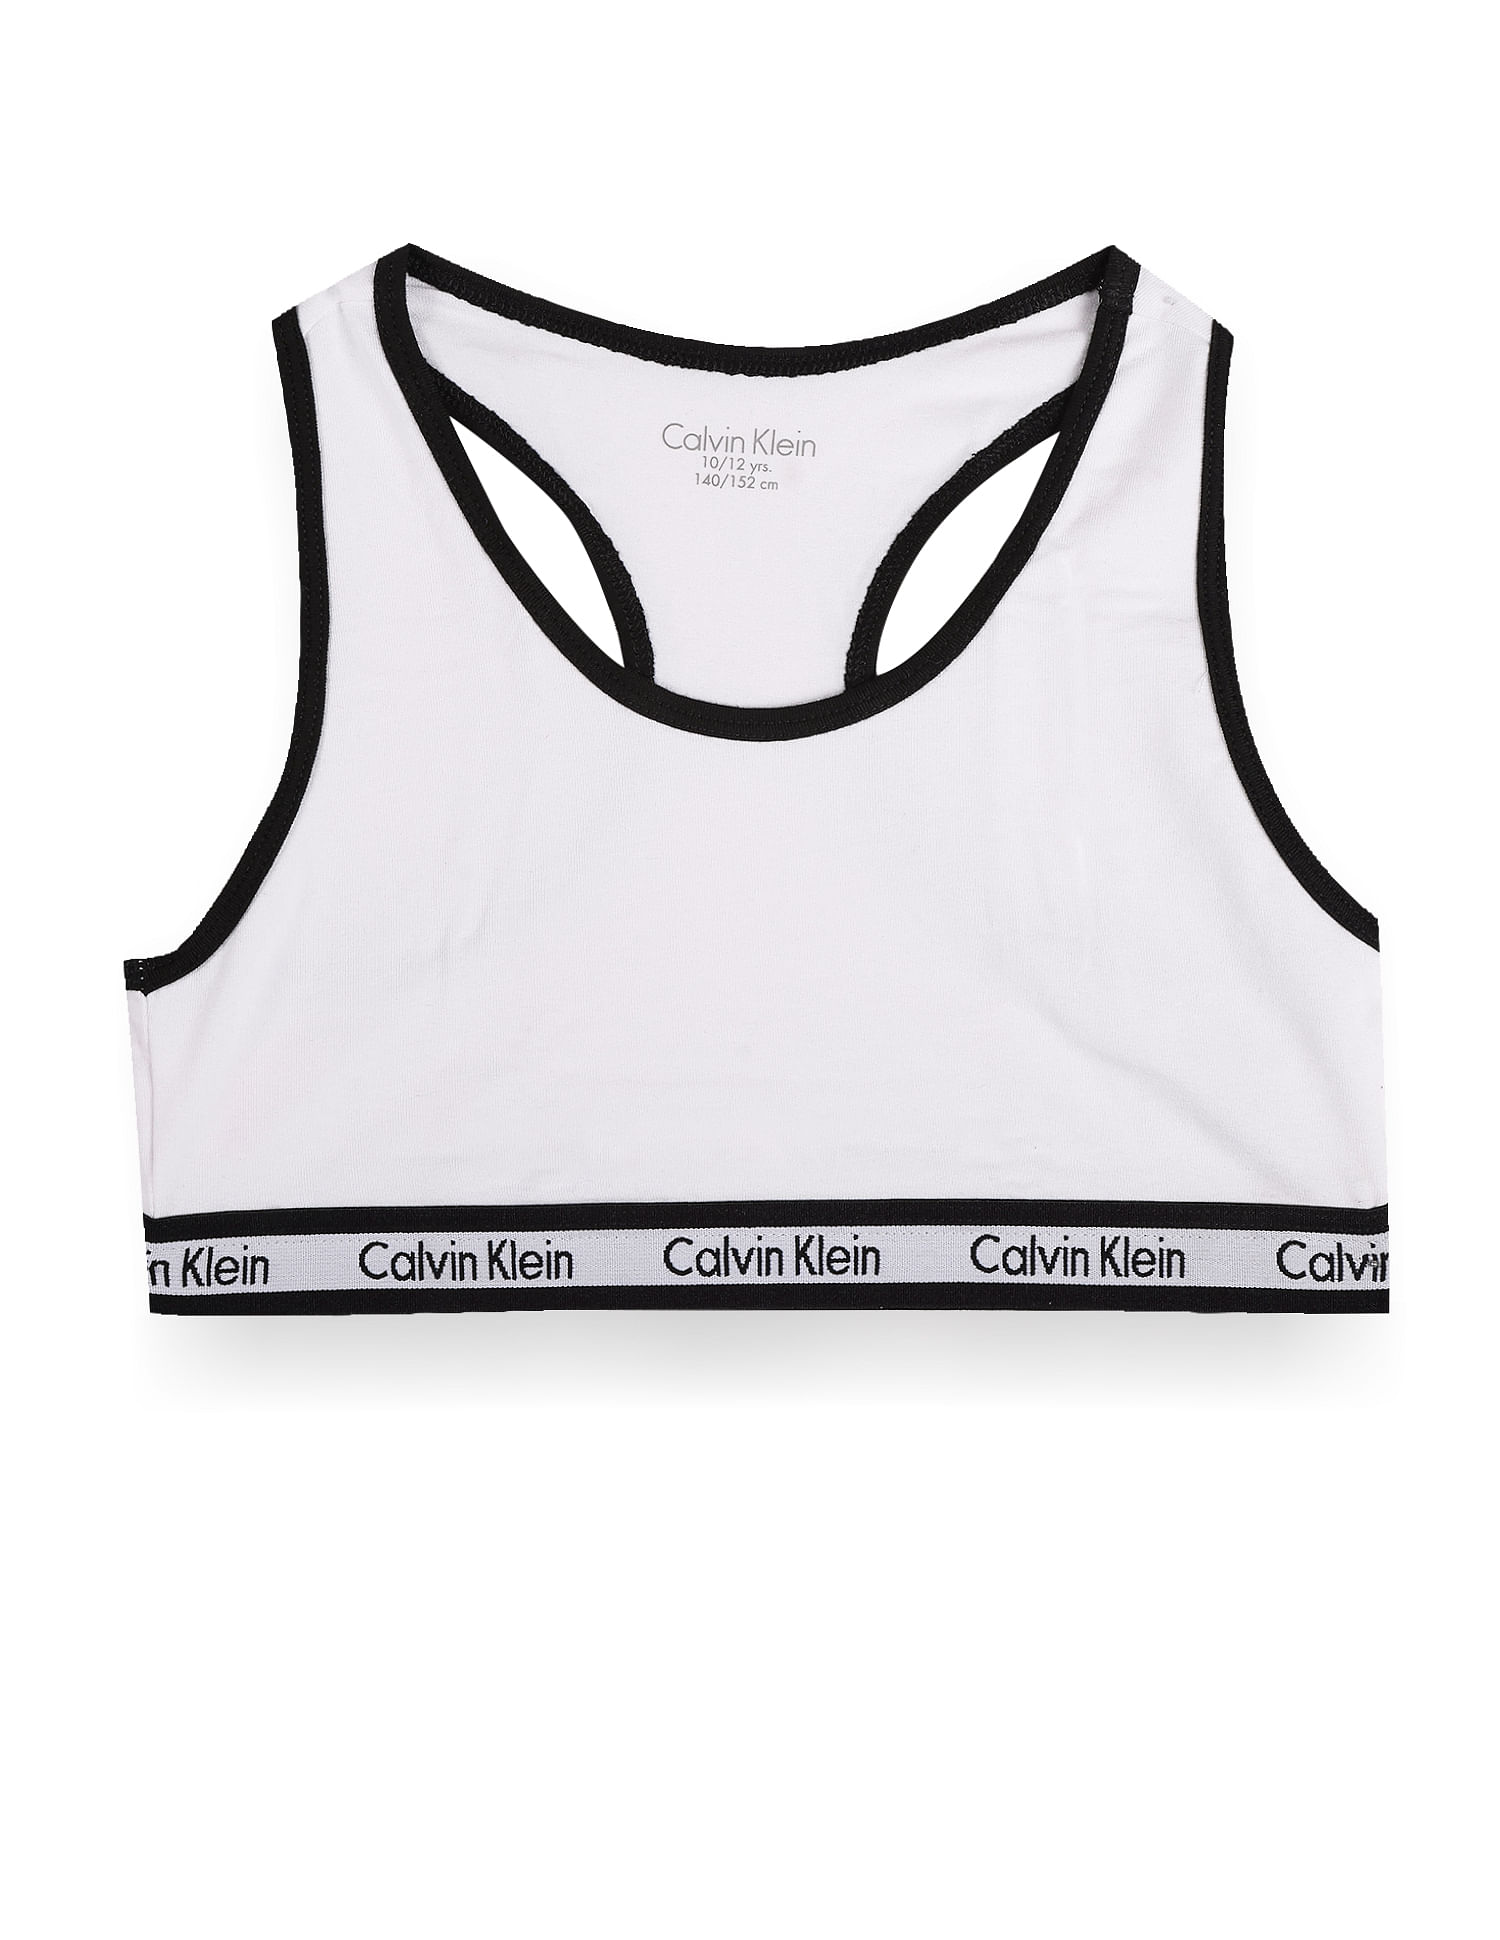 Calvin Klein Women's Modern Cotton Bralette 2 Pack, Black/Grey